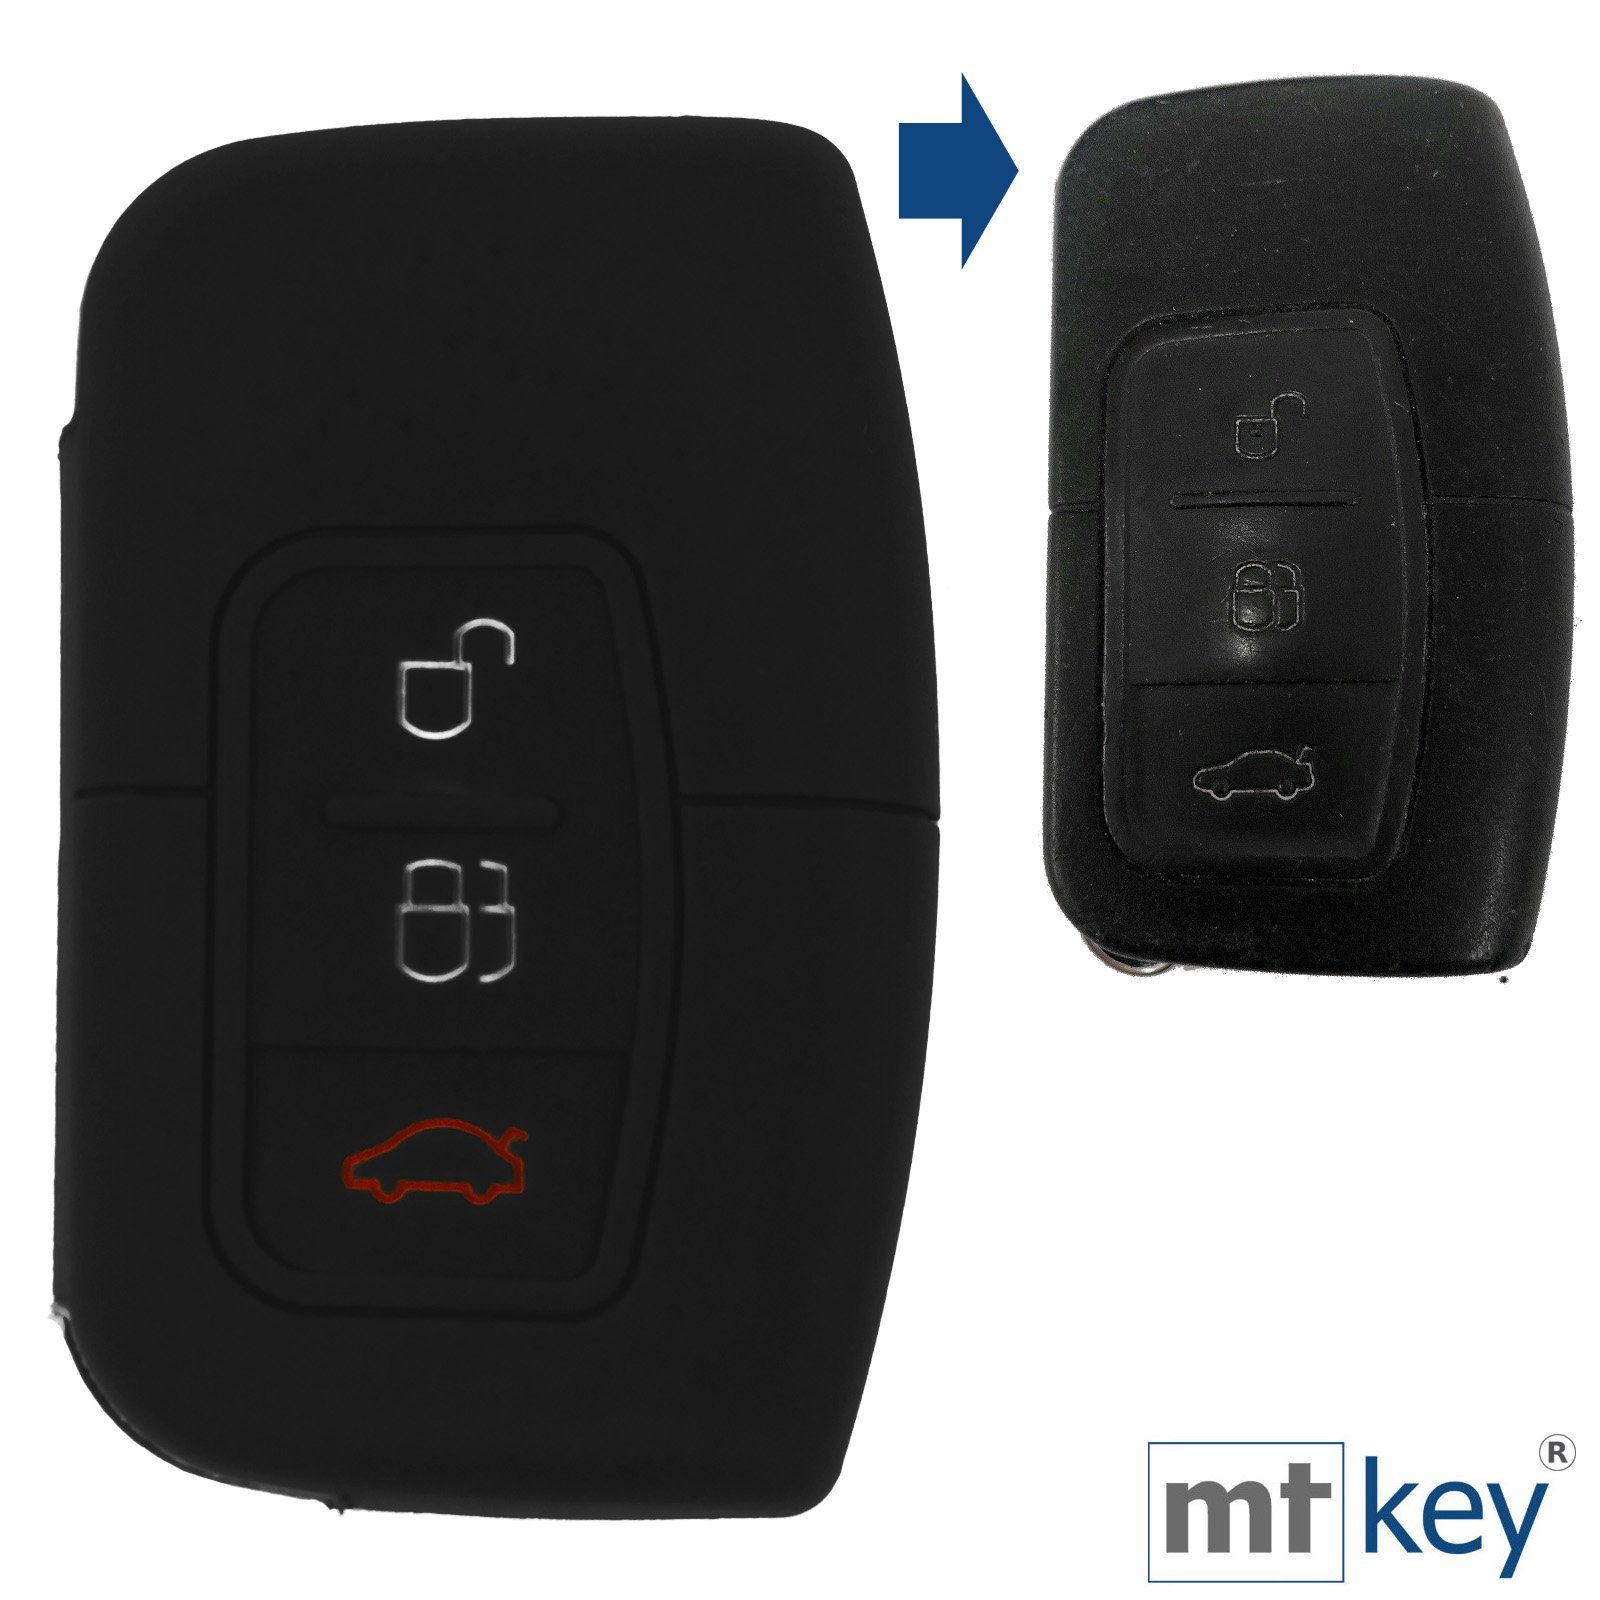 SMARTKEY Silikon Tasten für Schlüsseltasche Focus Ford 3 KEYLESS Schwarz, Kuga Mondeo mt-key Schutzhülle Softcase C-Max Autoschlüssel